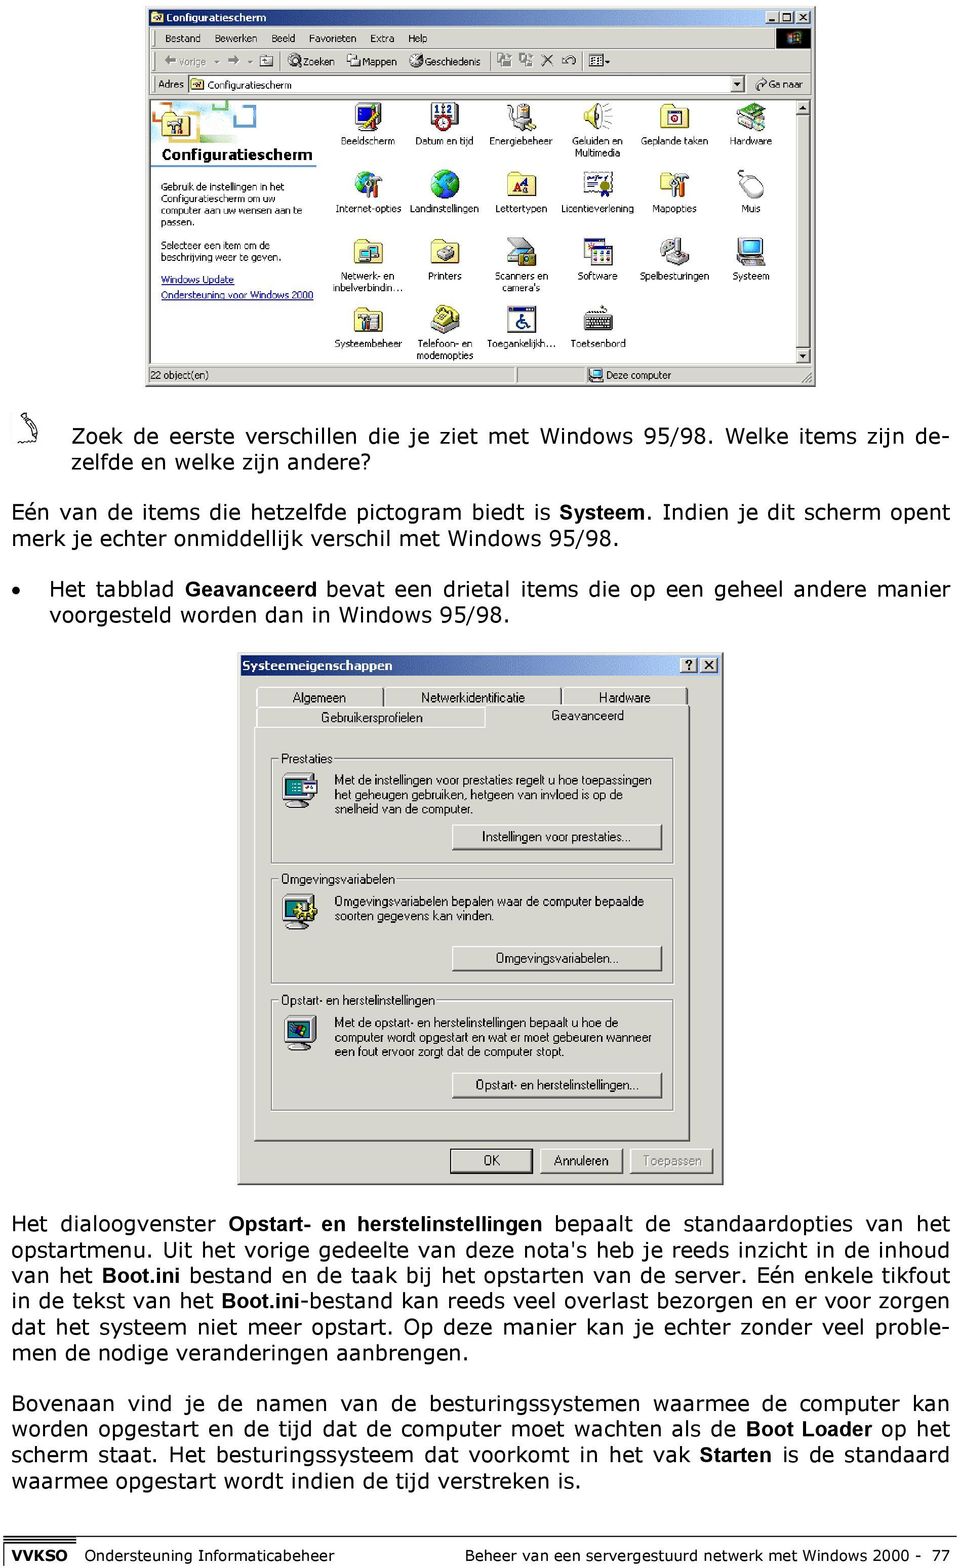 Het tabblad Geavanceerd bevat een drietal items die op een geheel andere manier voorgesteld worden dan in Windows 95/98.